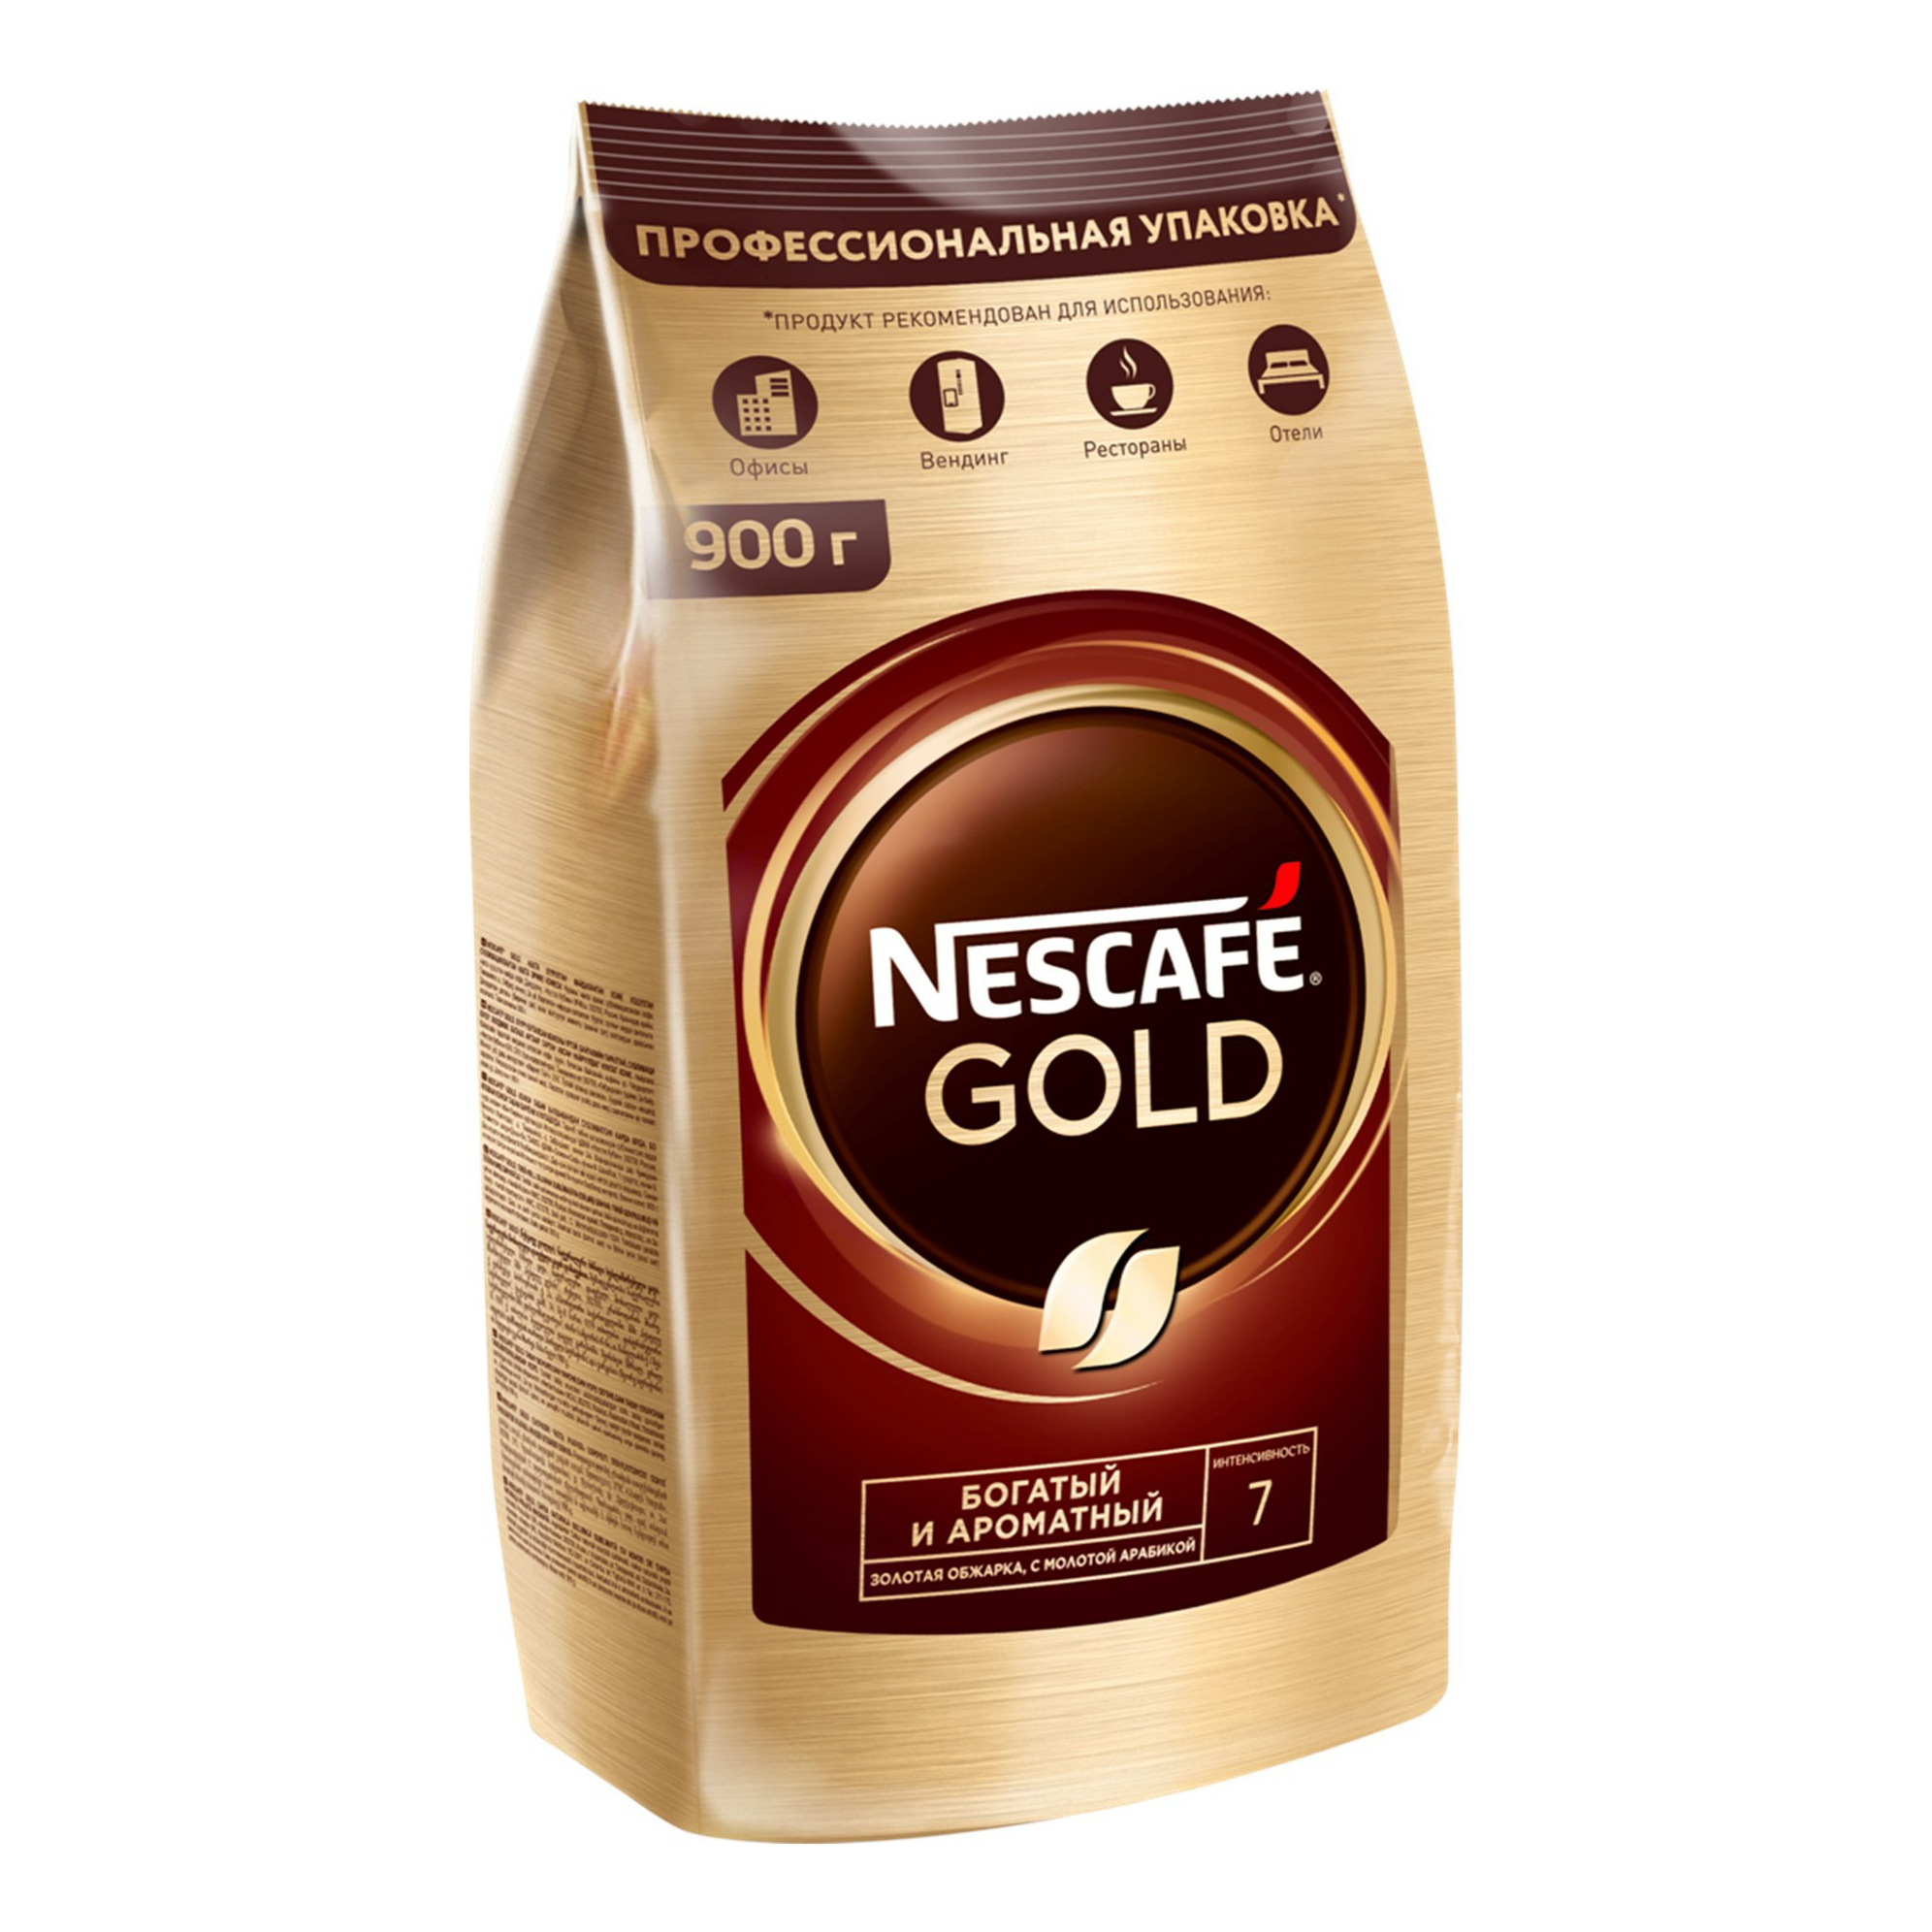 Купить кофе голд 500 гр. Nescafe Gold 900. Кофе растворимый Nescafe Gold 750 г. Кофе Нескафе Голд 900 гр. Nescafe кофе Gold 900г..